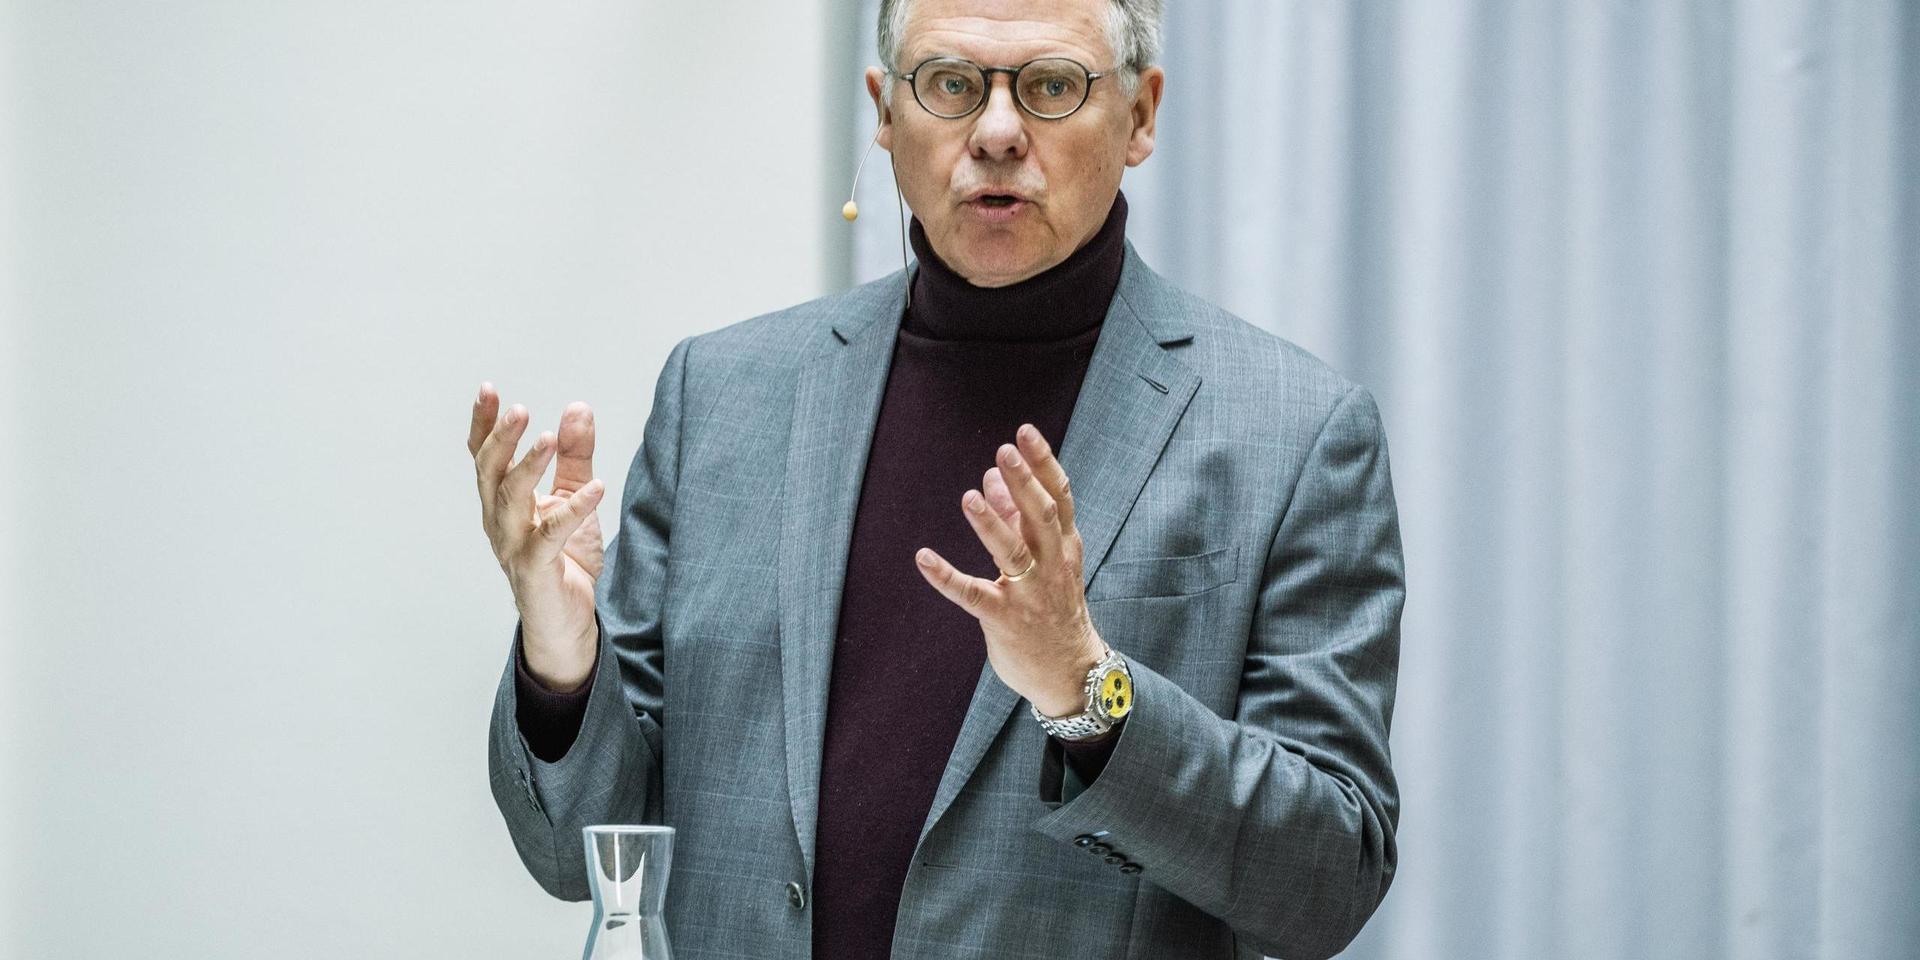 Ekonomen Klas Eklund förespråkar ett helhetsgrepp inom skattepolitiken.